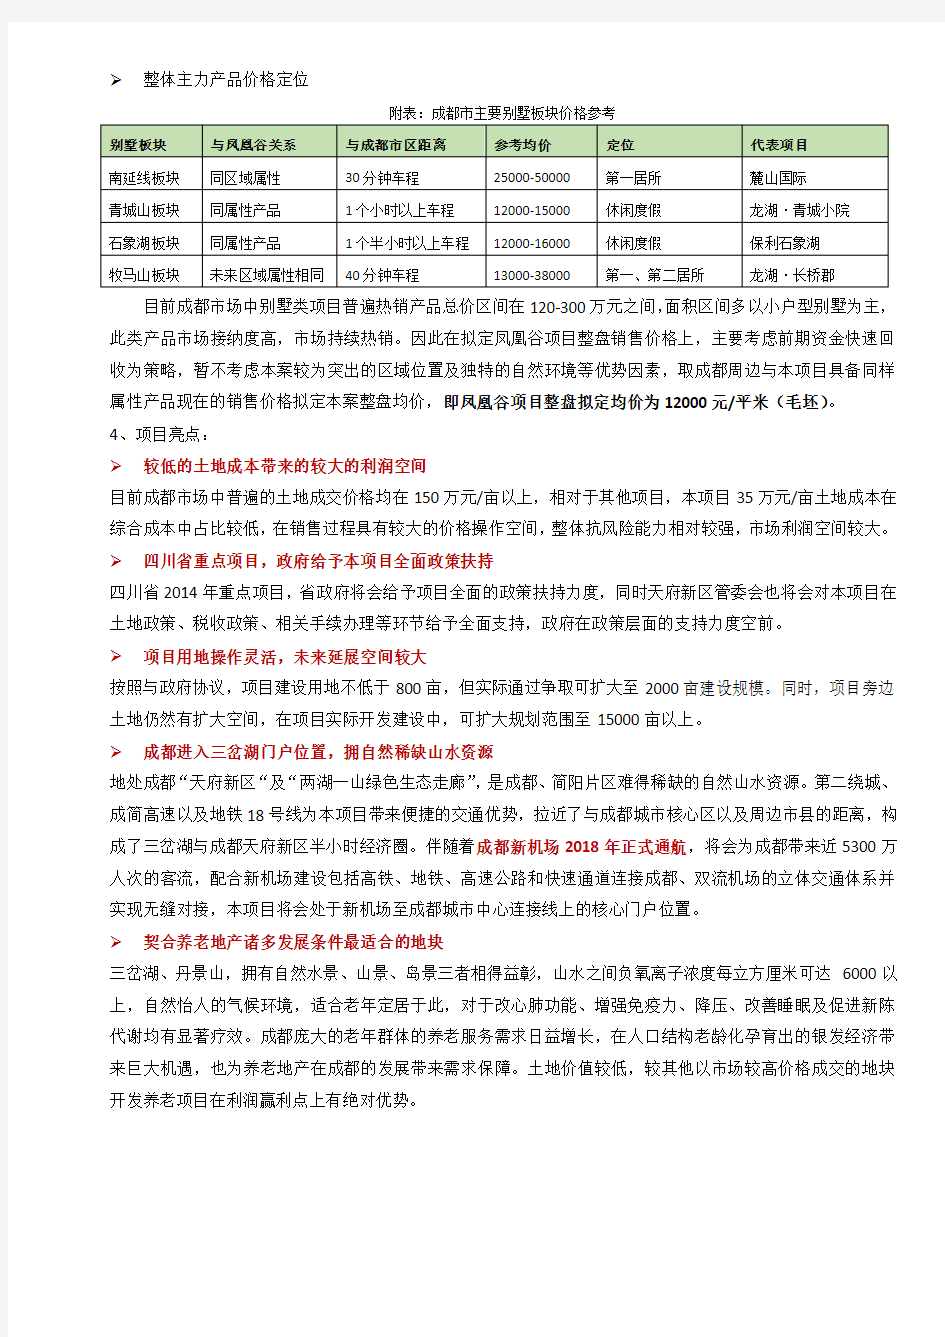 中国成都天府新区·凤凰谷项目介绍要点(20141118版本) - 复件